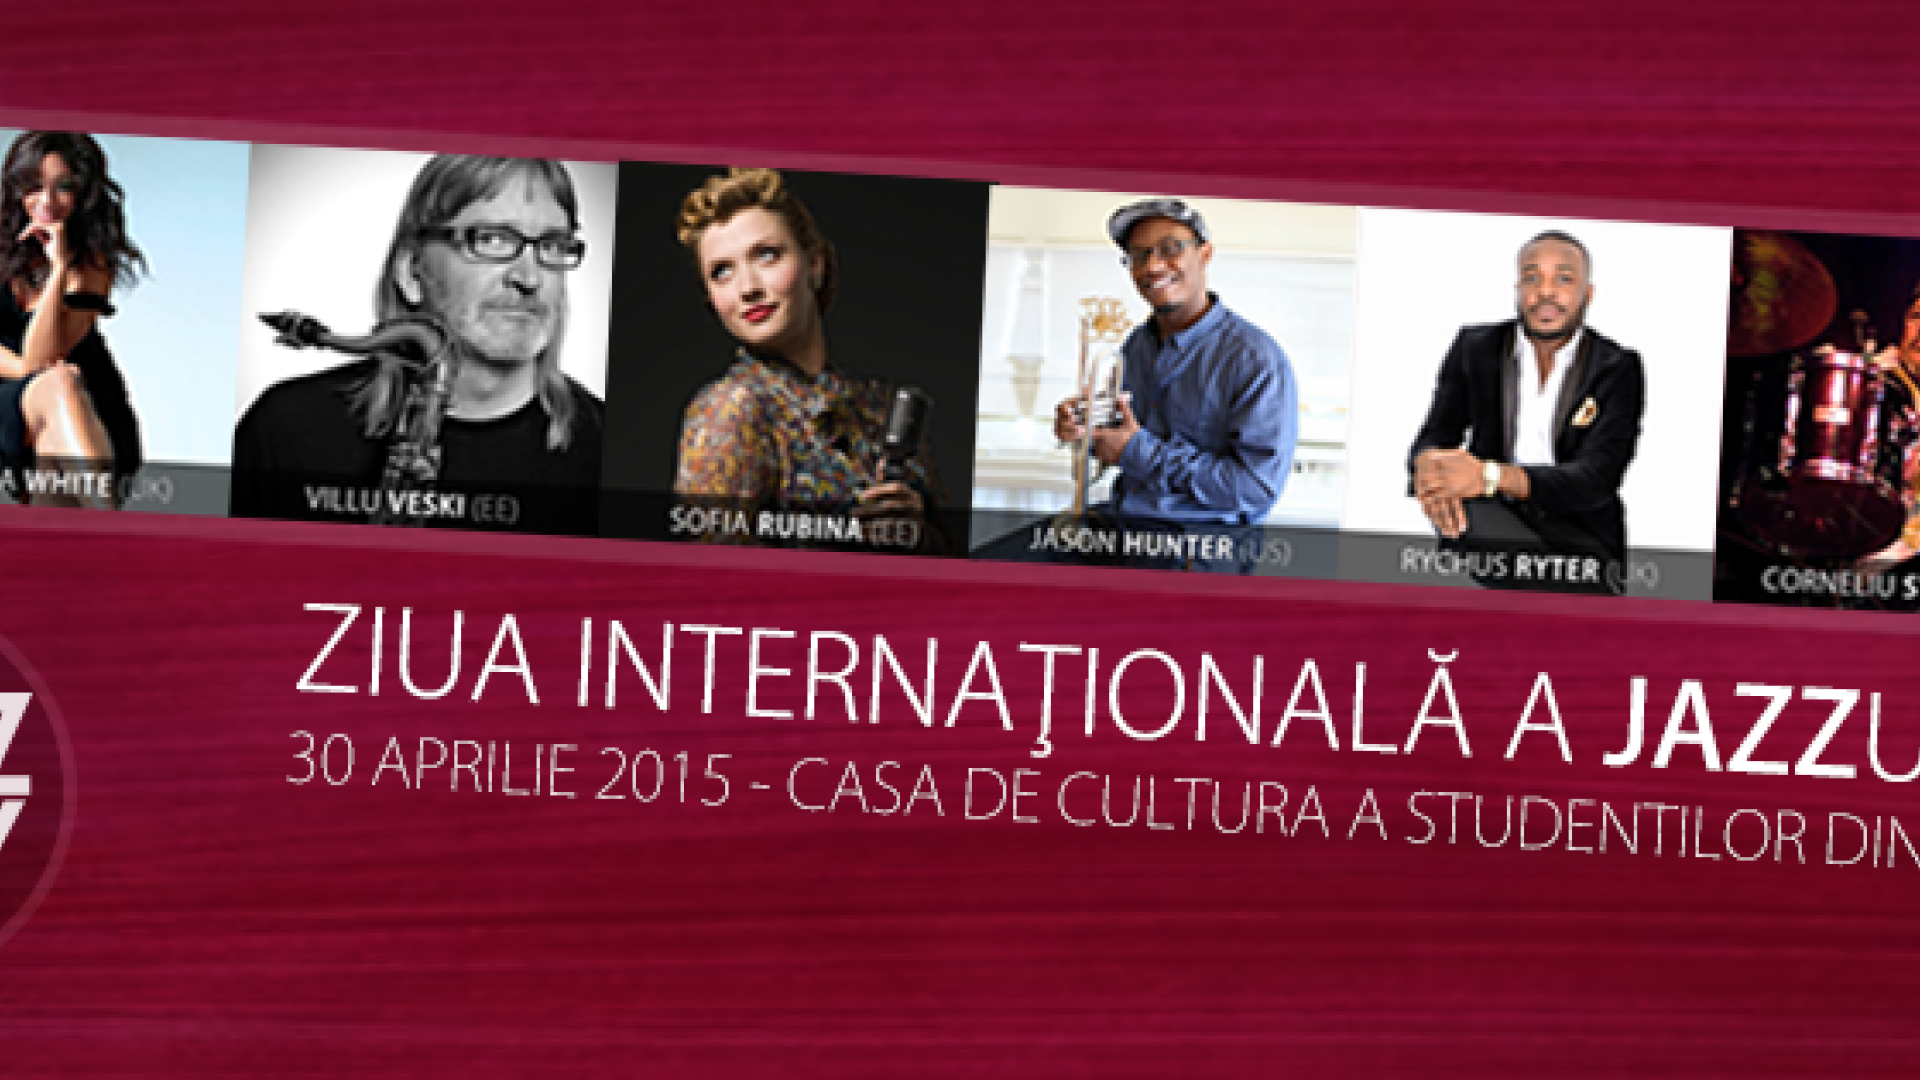 Ziua Internationala a Jazzului 2015, sarbatorita prin cel mai complex speclacol la Cluj-Napoca